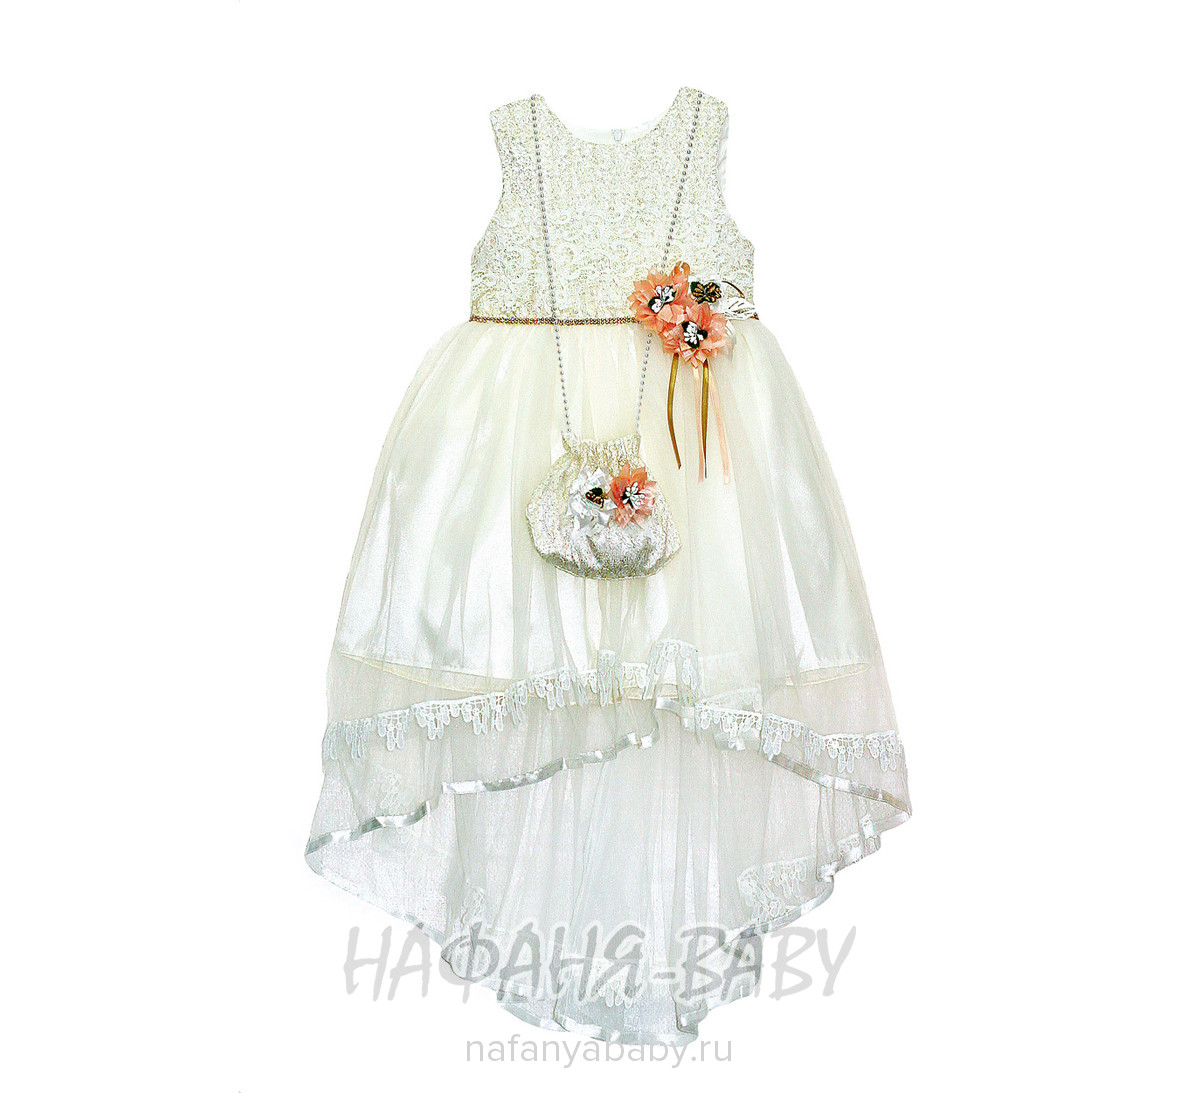 Детское платье MISS MARINE , купить в интернет магазине Нафаня. арт: 0574.